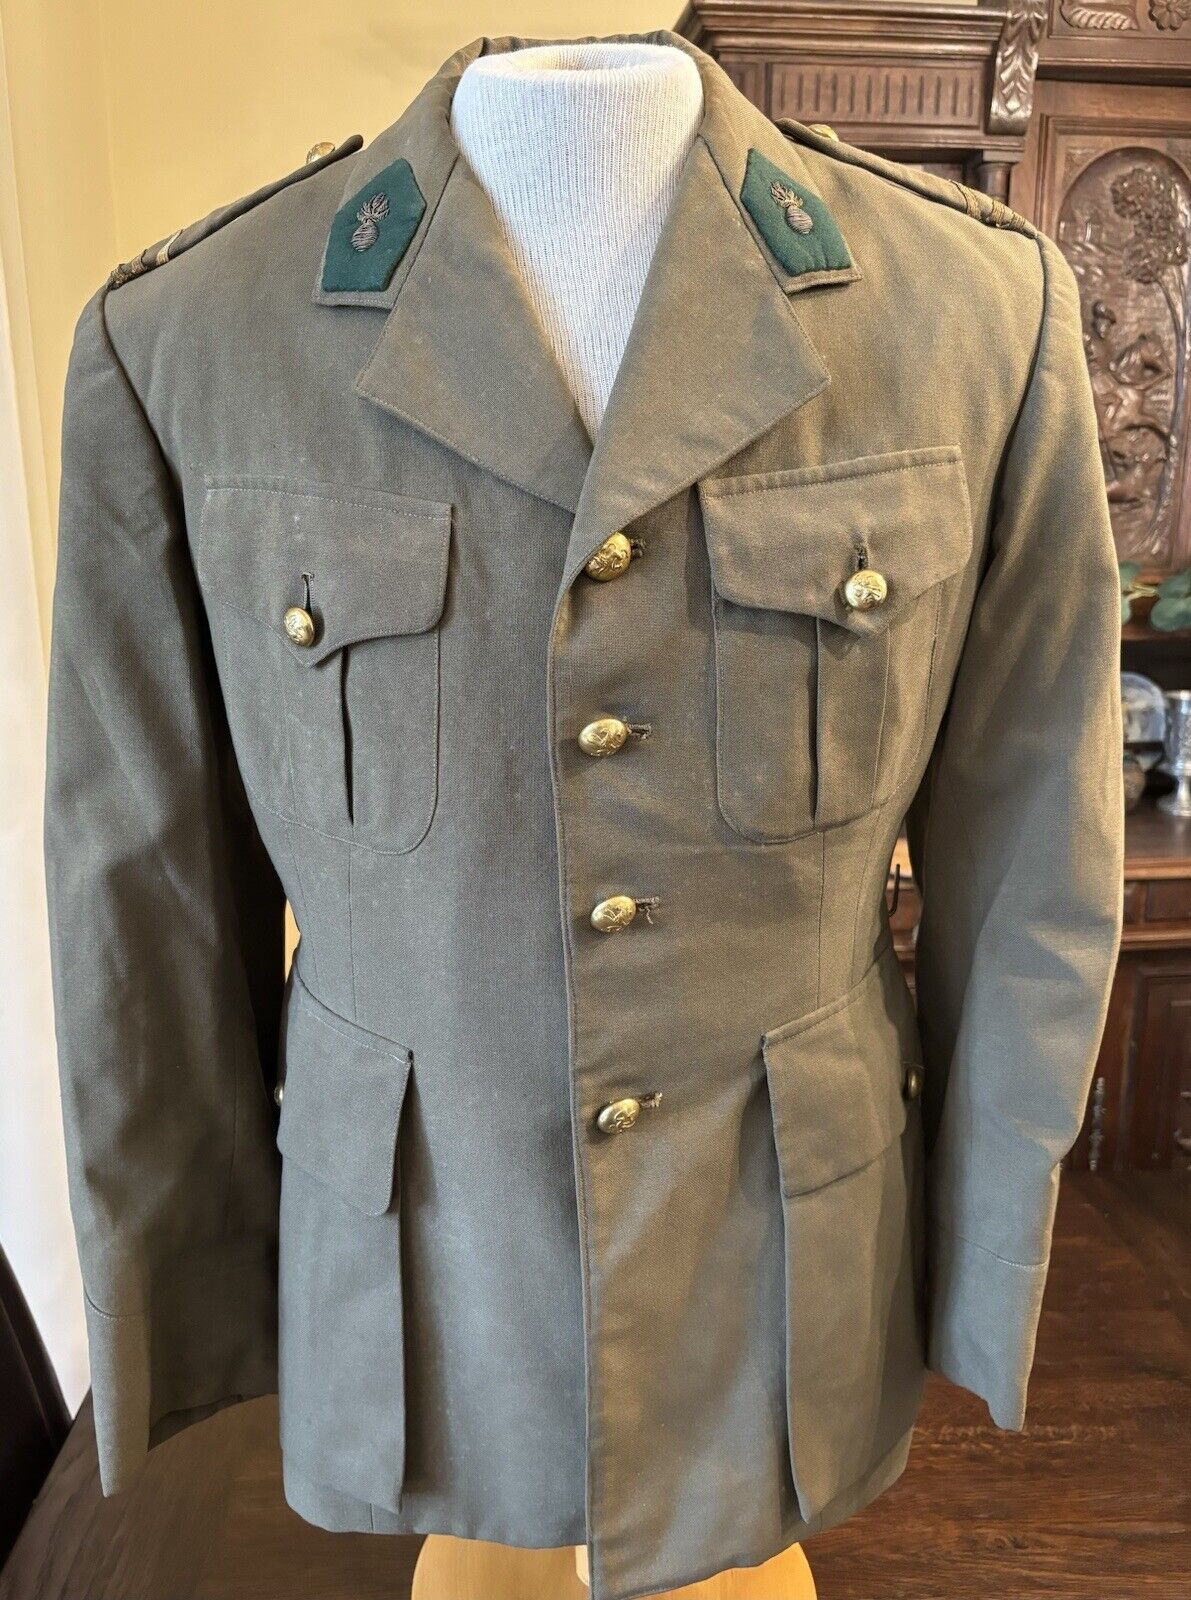 CIRCA 1960s BELGIAN ARMY DRESS JACKET SMALL REGULAR